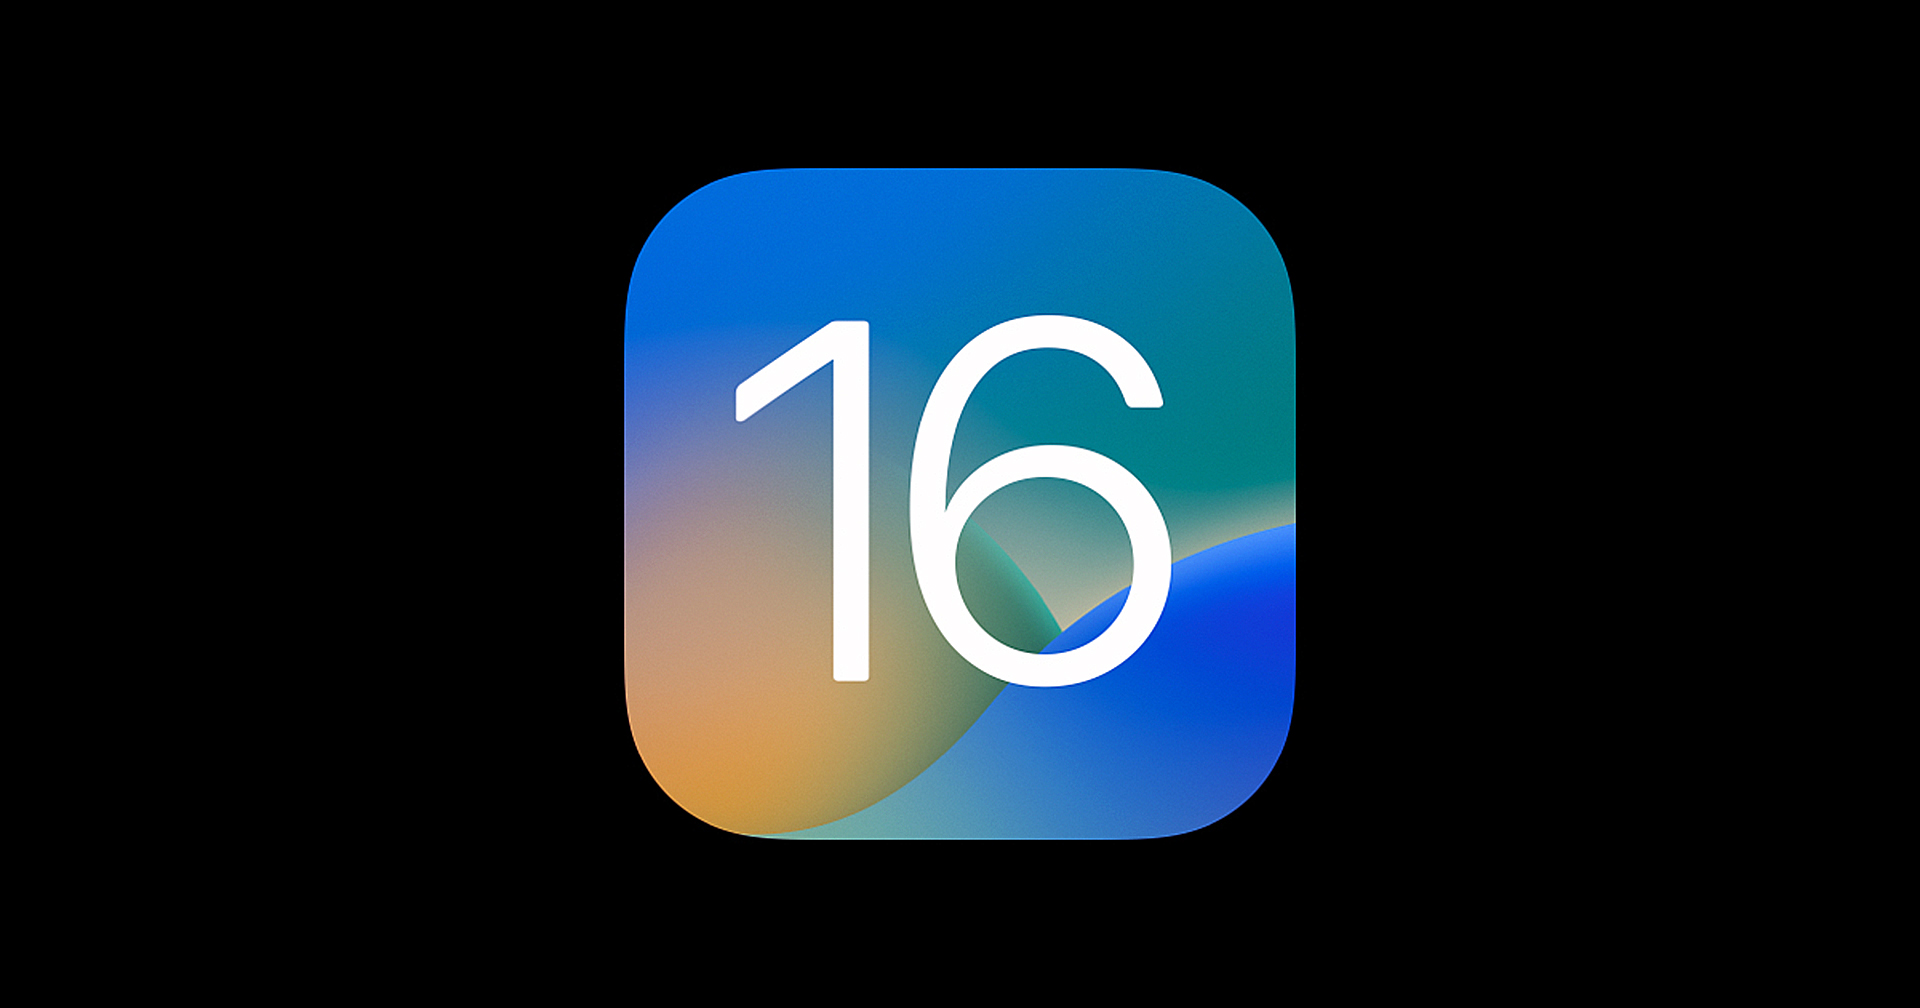 iOS 16 มียอดดาวน์โหลติดตั้งใน 72 ชั่วโมงแรก สูงกว่า iOS 15